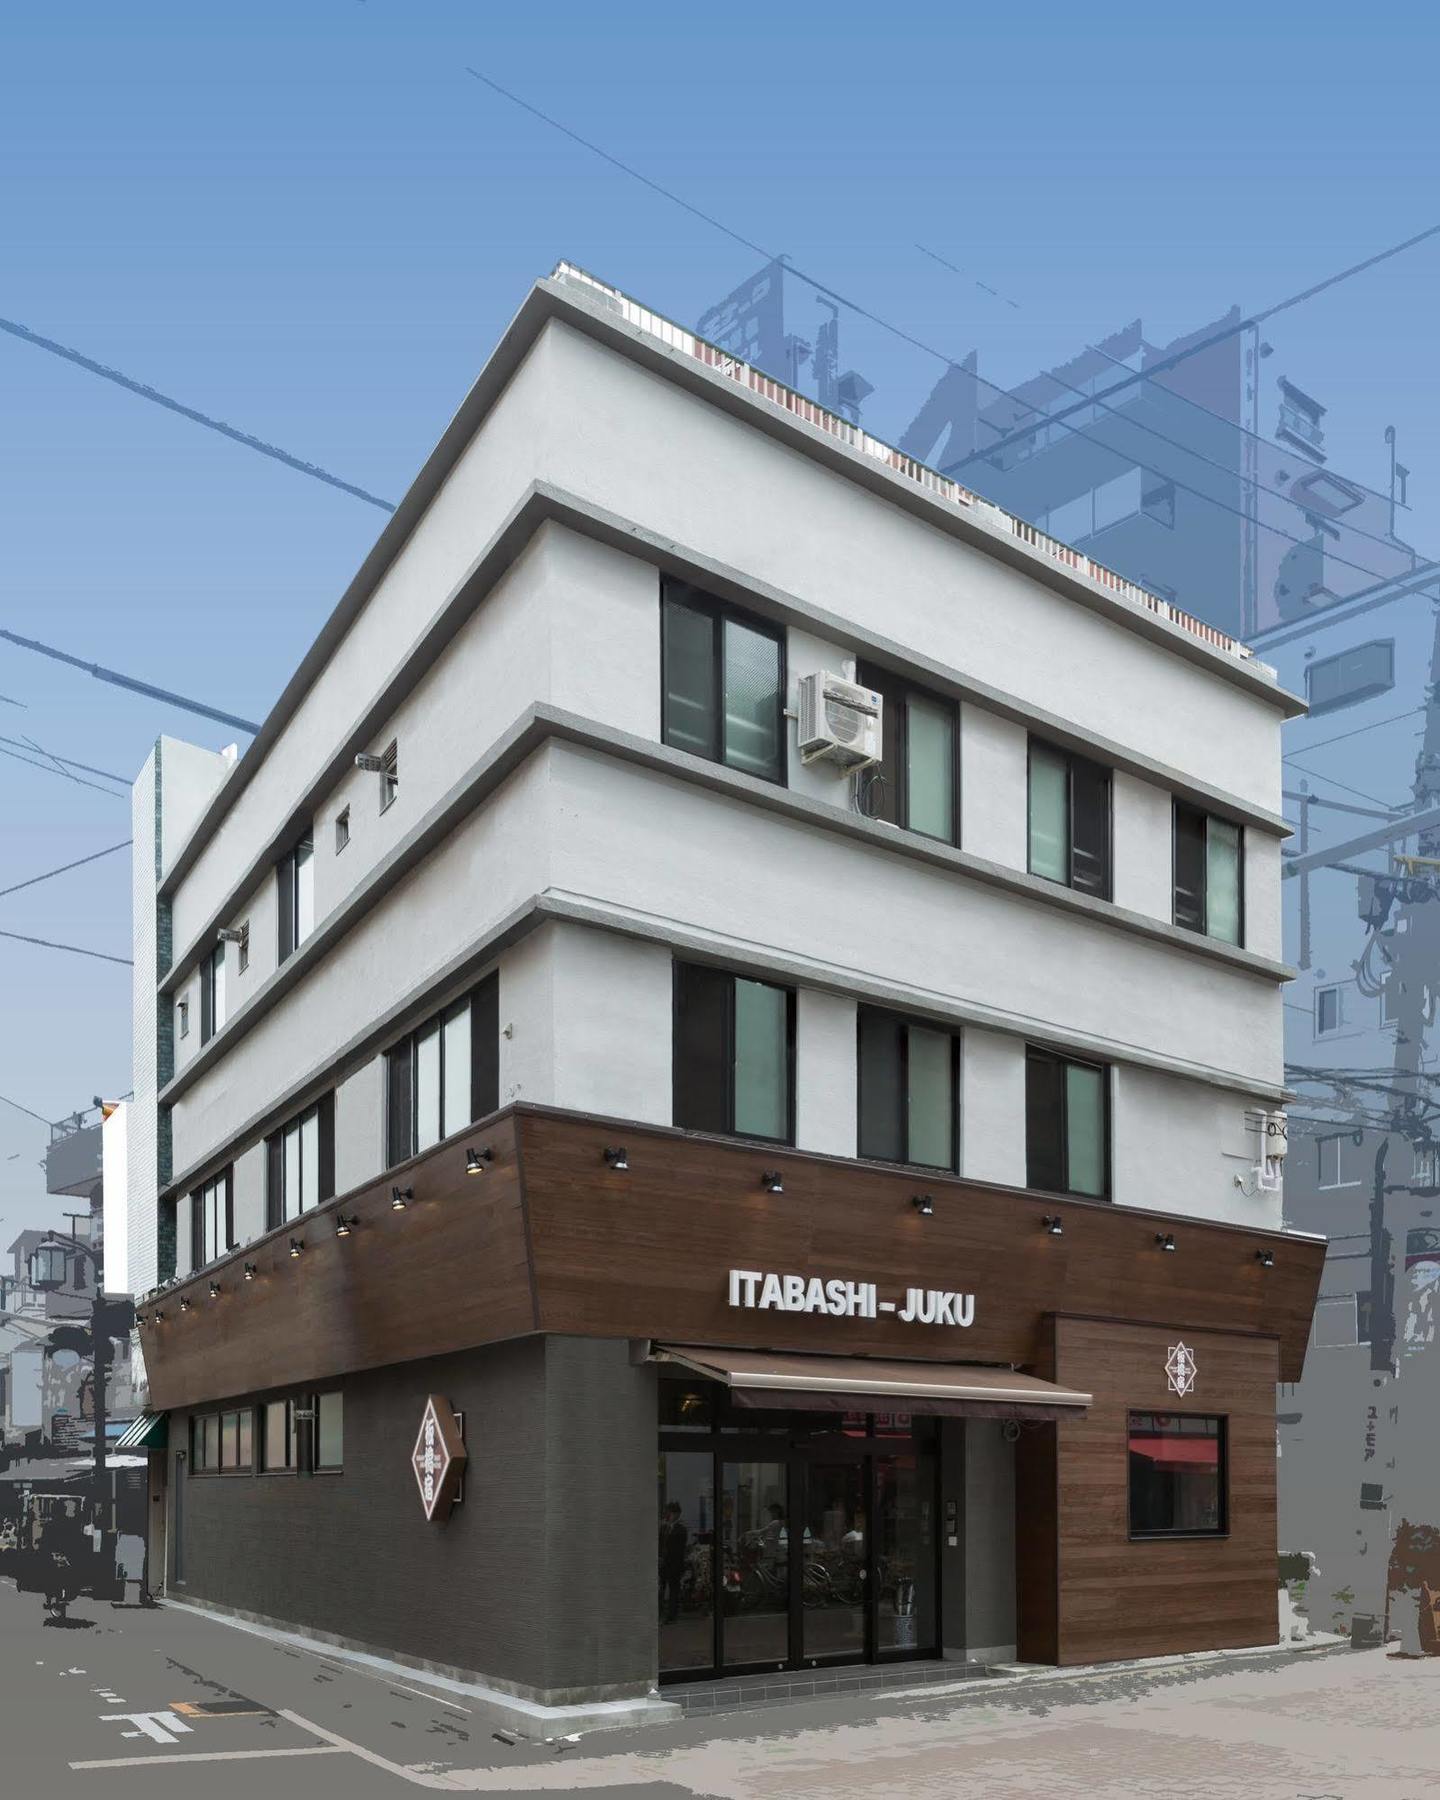 بيت ضيافة طوكيو إيتاباشي-جوكو المظهر الخارجي الصورة